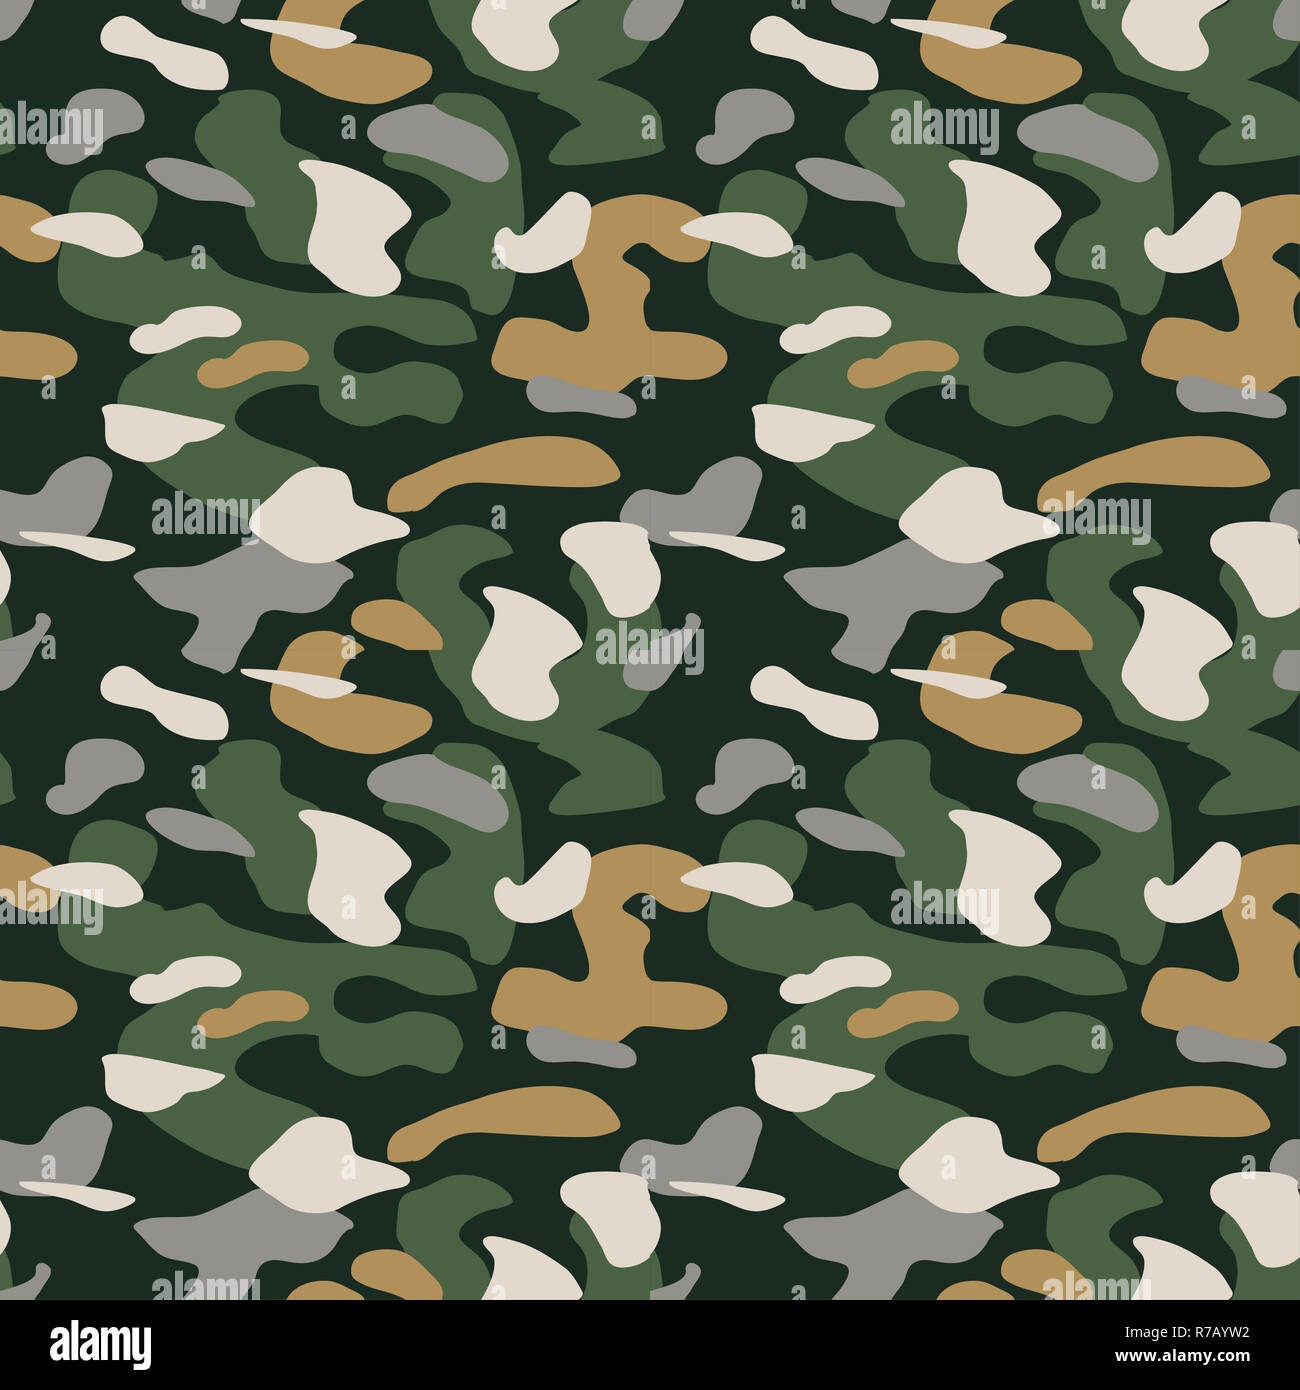 Camouflage Muster Hintergrund nahtlose Vektor Illustration. Klassische  militärische Kleidung Stil. Camo Textur shirt wiederholen. Grün Braun khaki  Gelb Farben Dschungel Textur Stockfotografie - Alamy